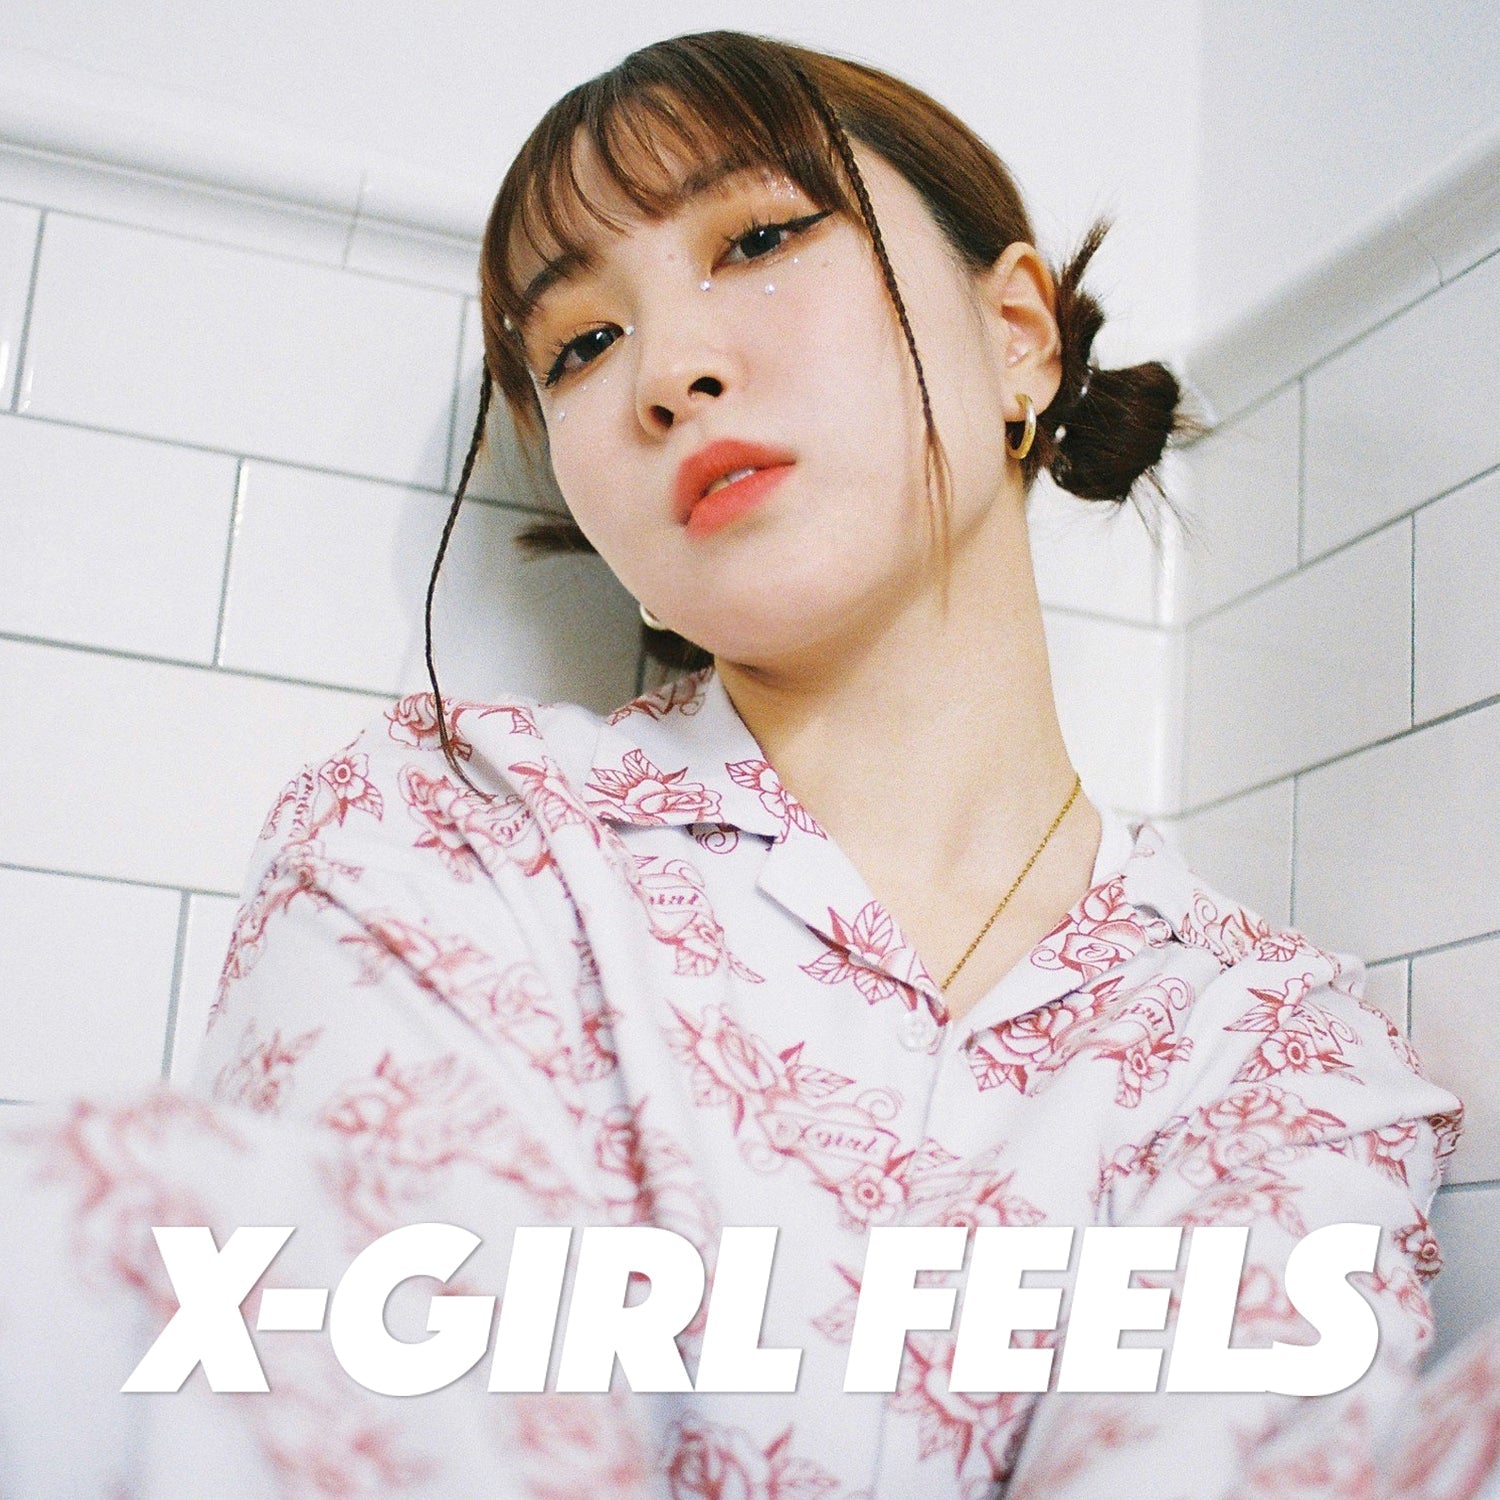 X-girl feels vol.18